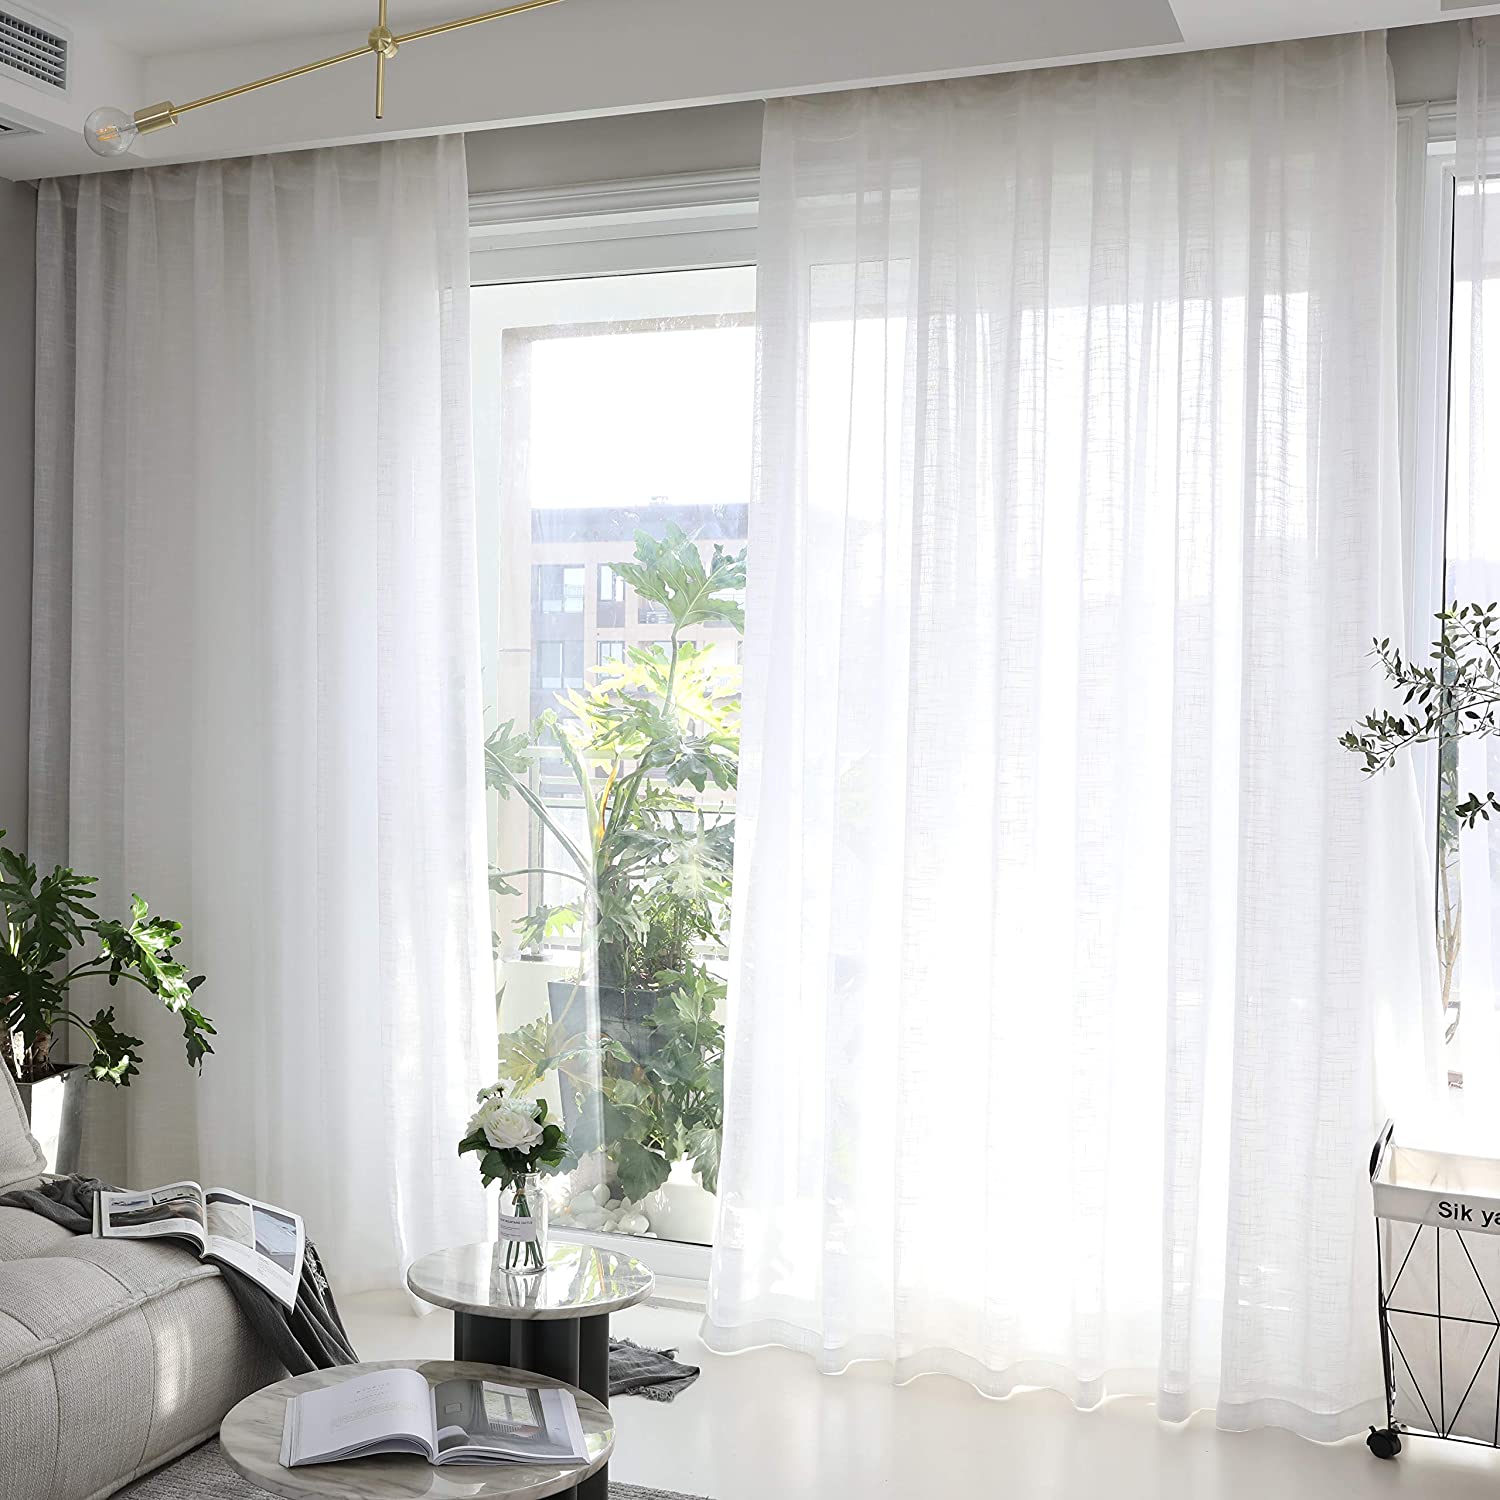 Rèm cửa sẽ giúp cản sáng khi nắng gắt và tạo sự riêng tư.